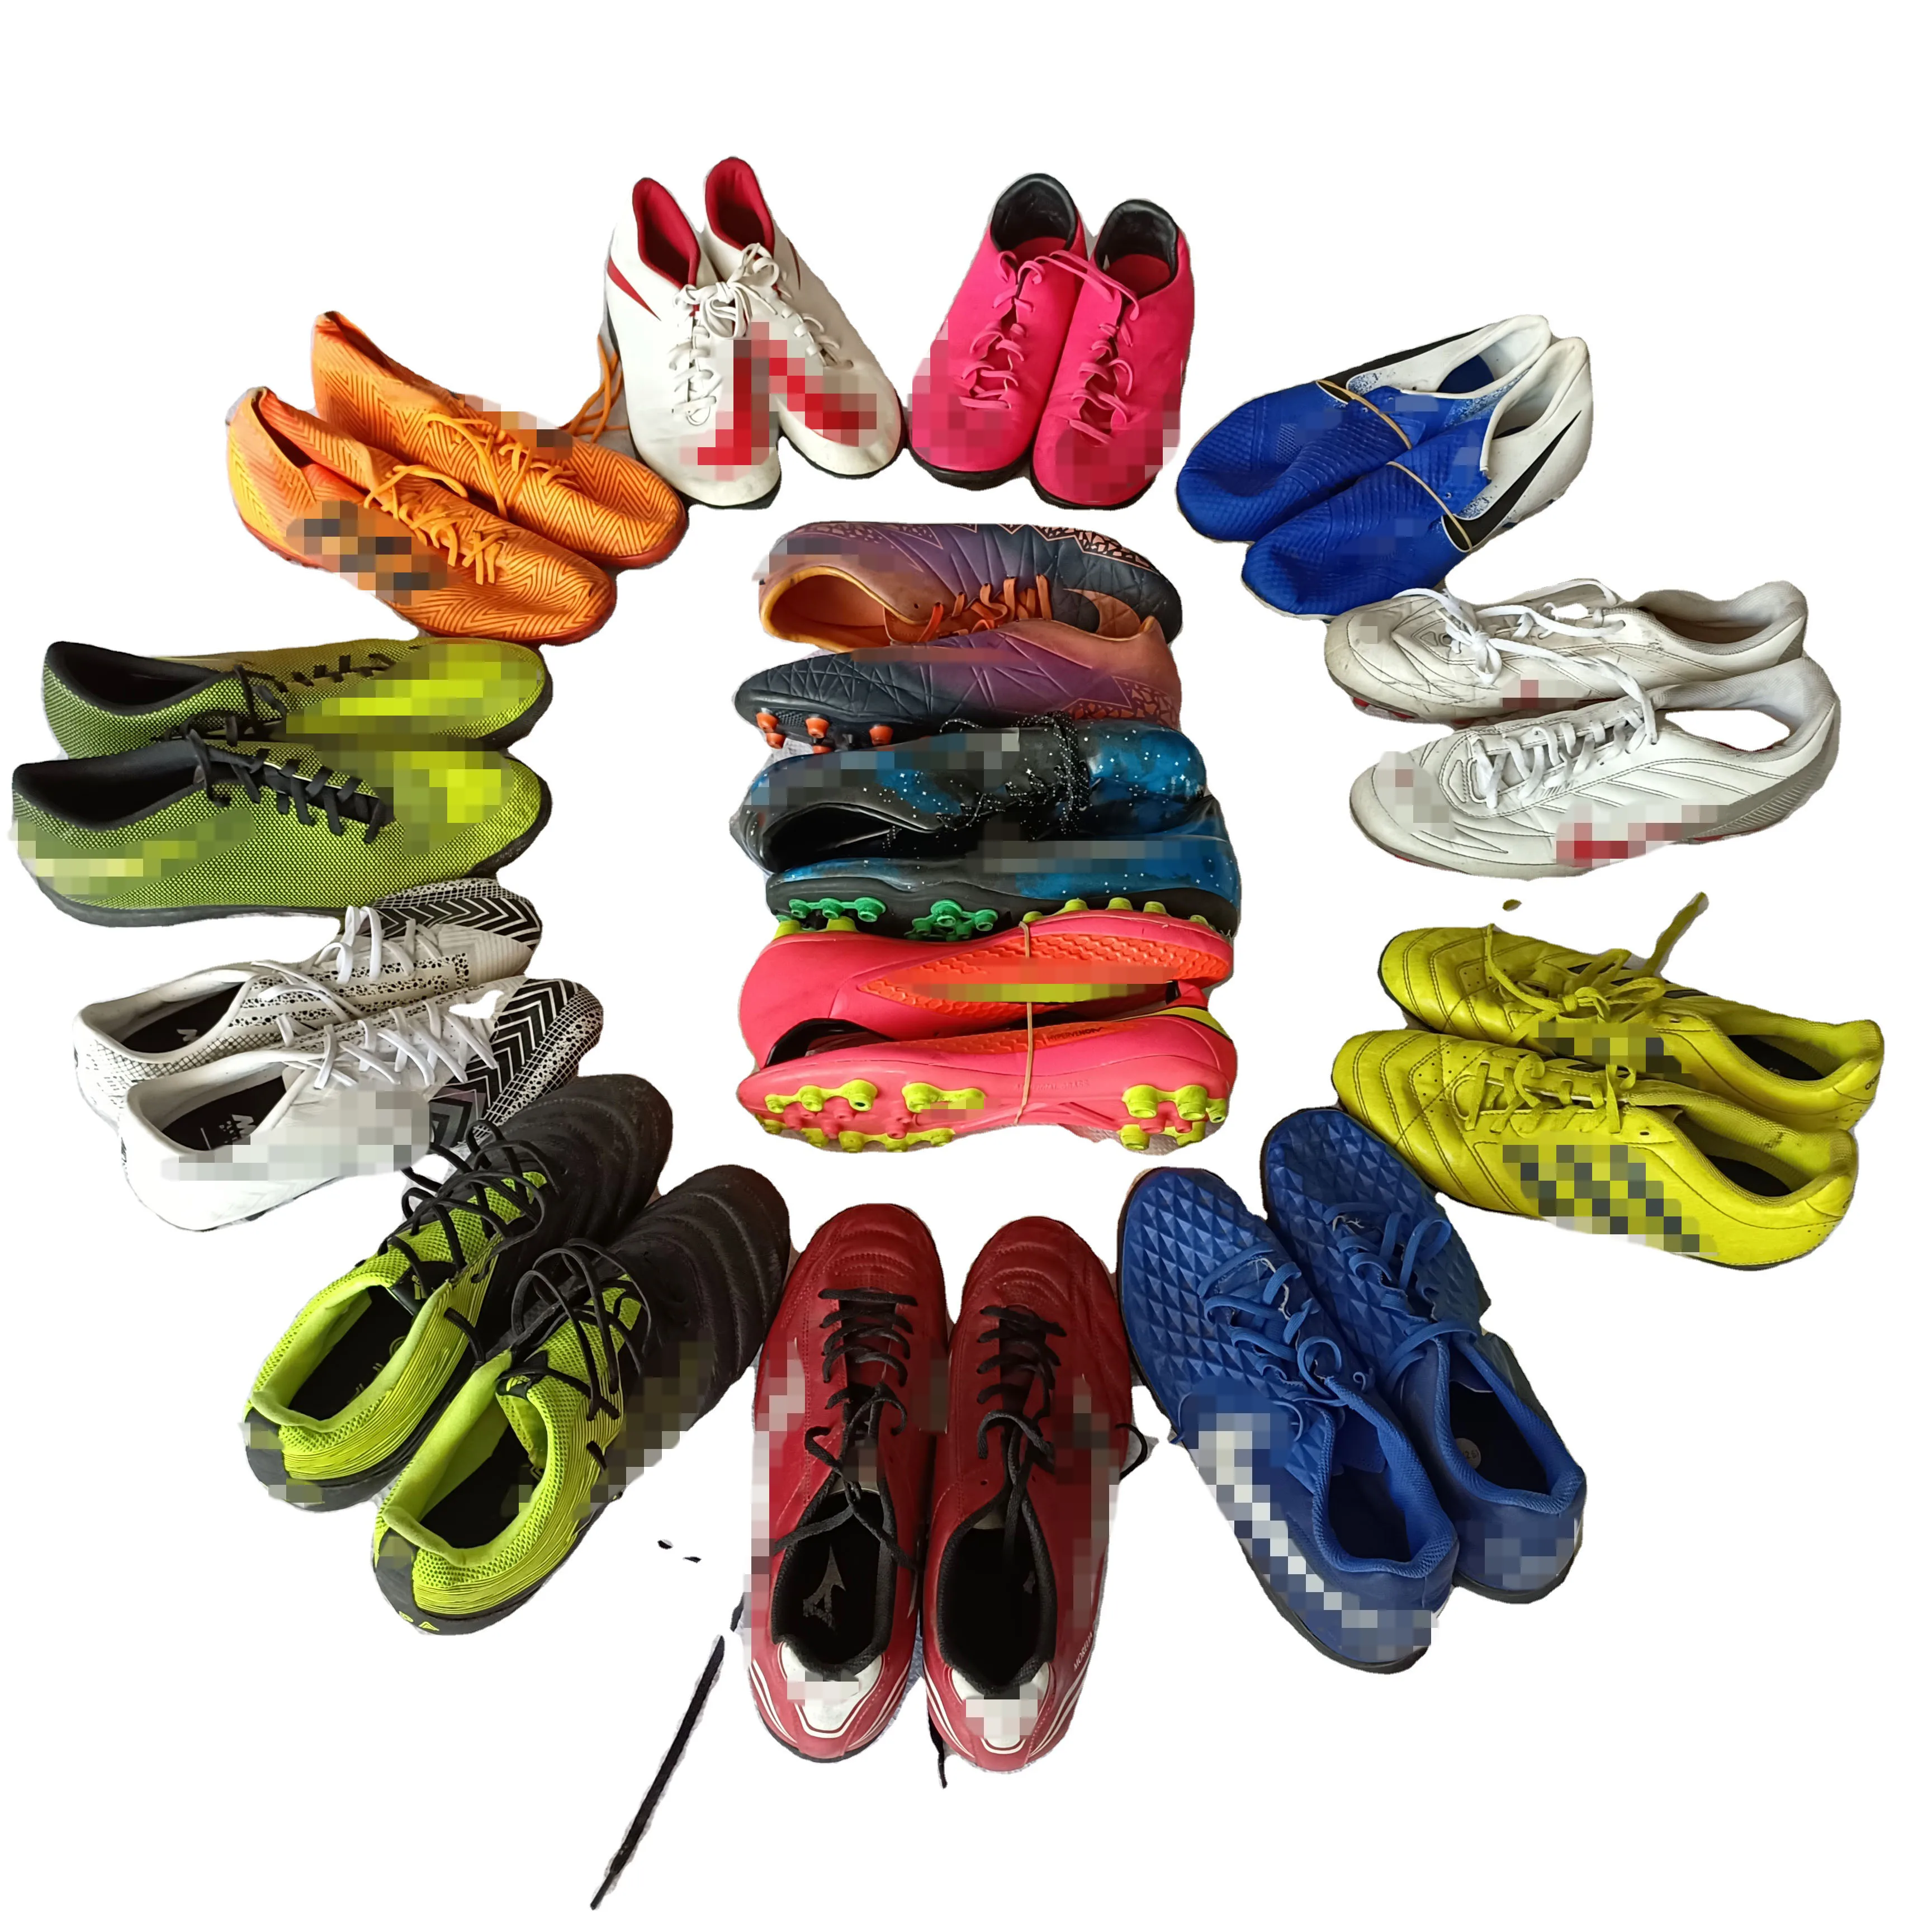 Фабричные тренировочные кроссовки для мужчин, новая футбольная обувь, недорого, чистые футбольные бутсы, б/у футбольная обувь